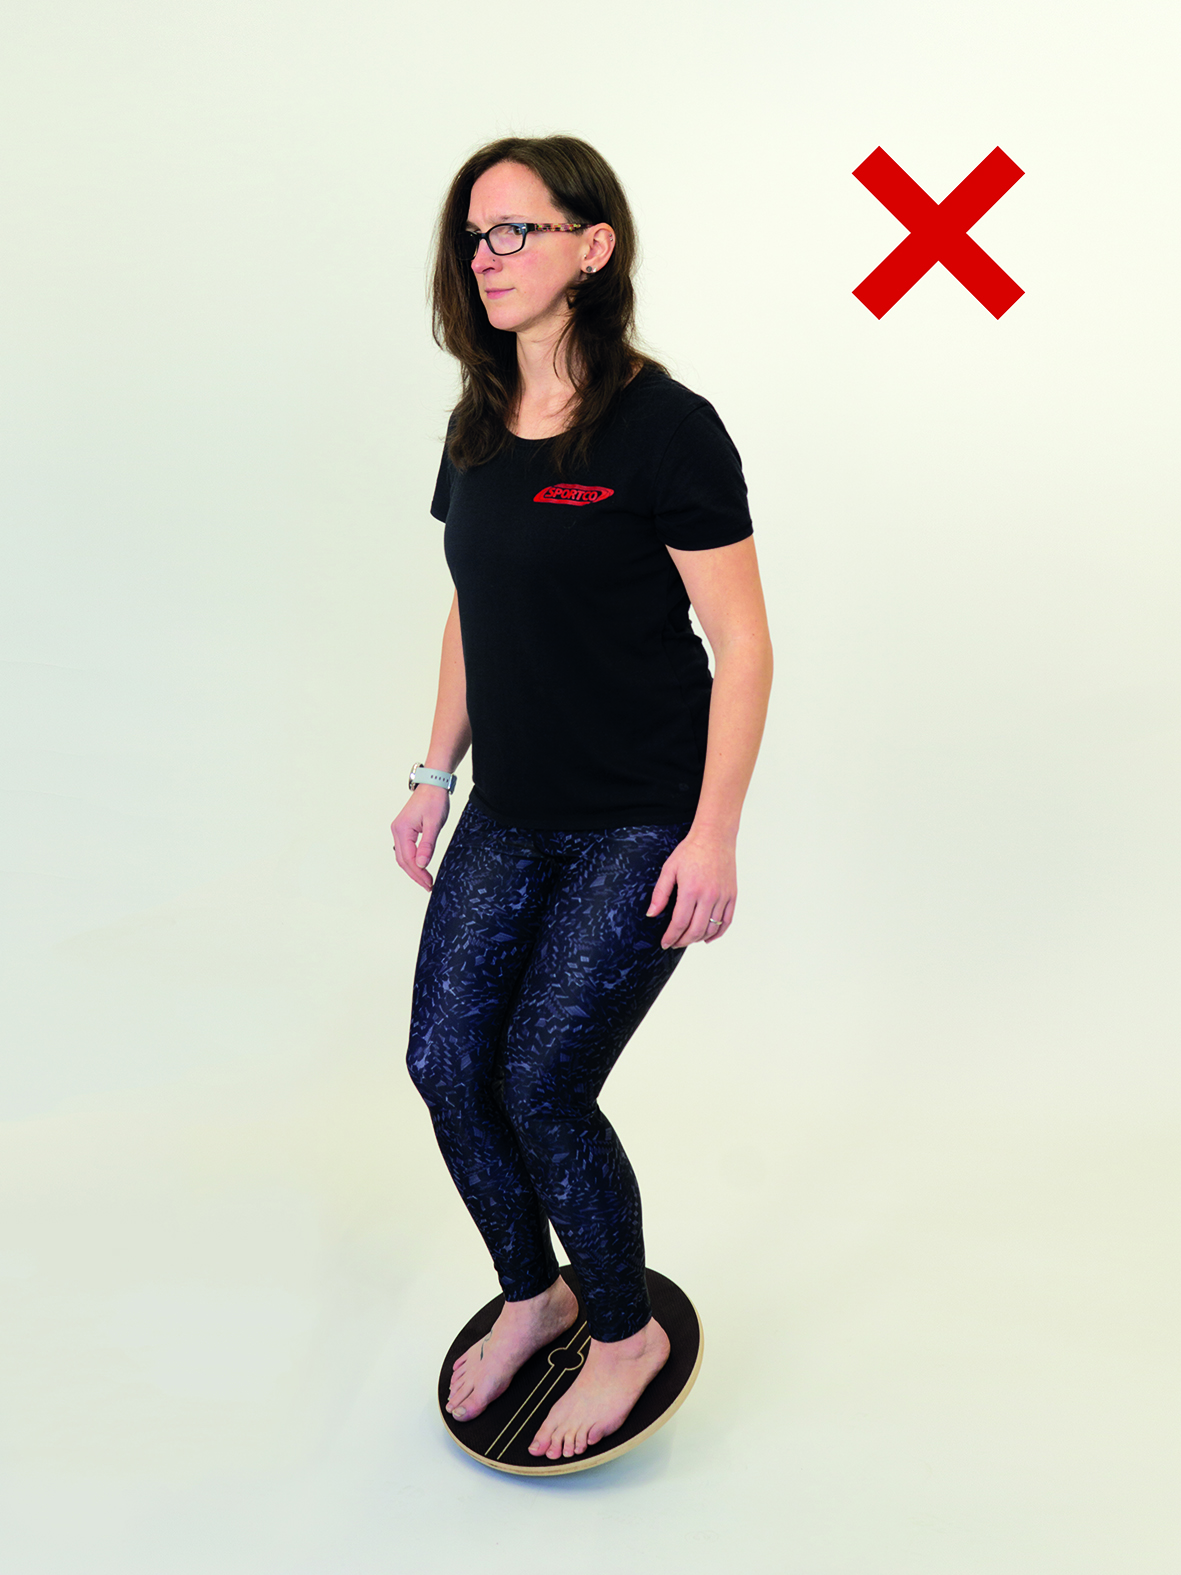 Frau steht mit beiden Beinen auf Therapiekreisel und hält Gleichgewicht in der Mitte